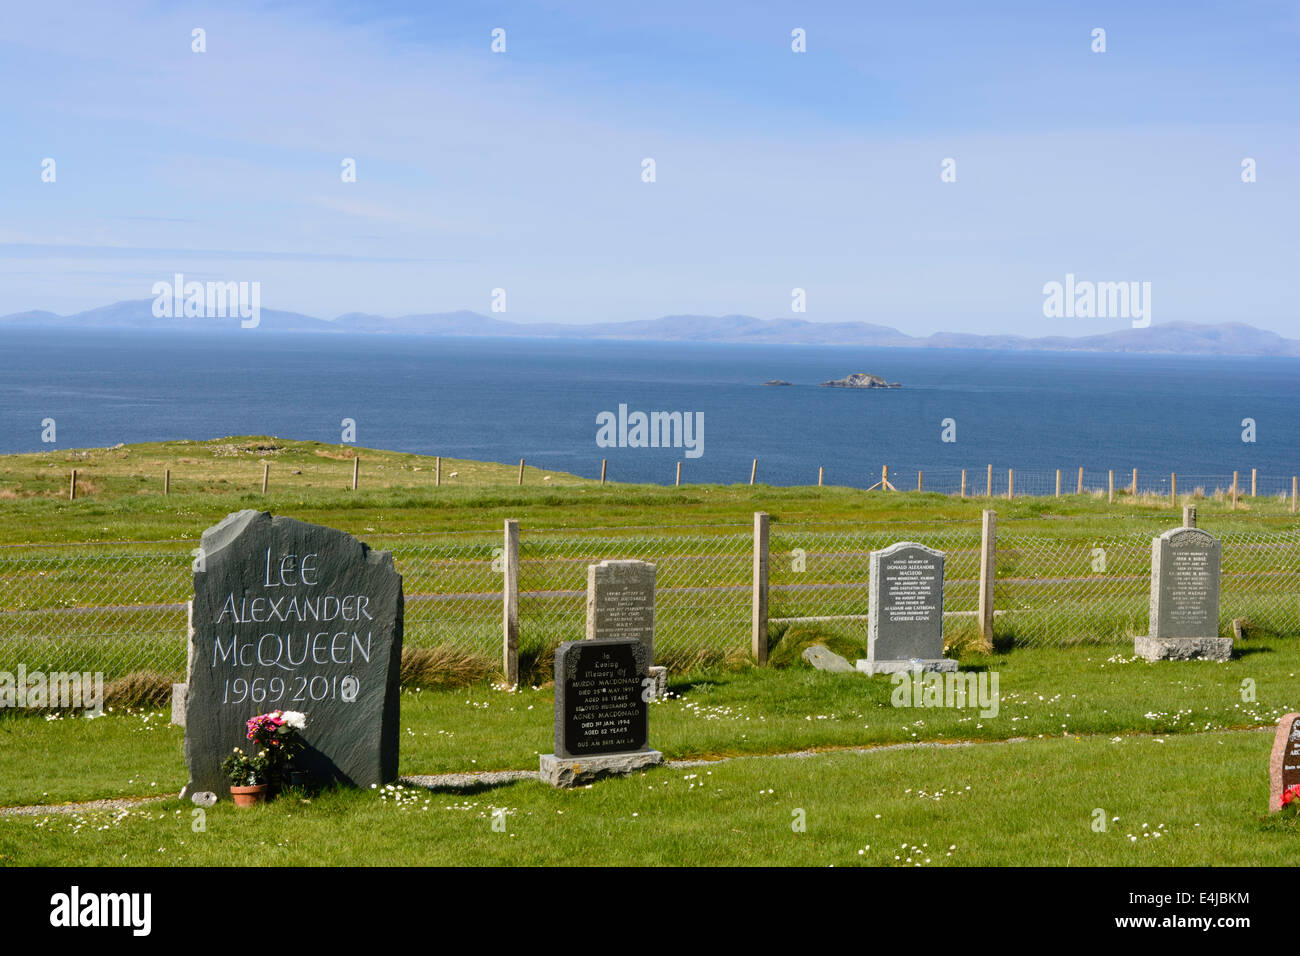 Il luogo del riposo finale del designer di moda Lee Alexander McQueen sull'Isola di Skye in Scozia,UK Foto Stock